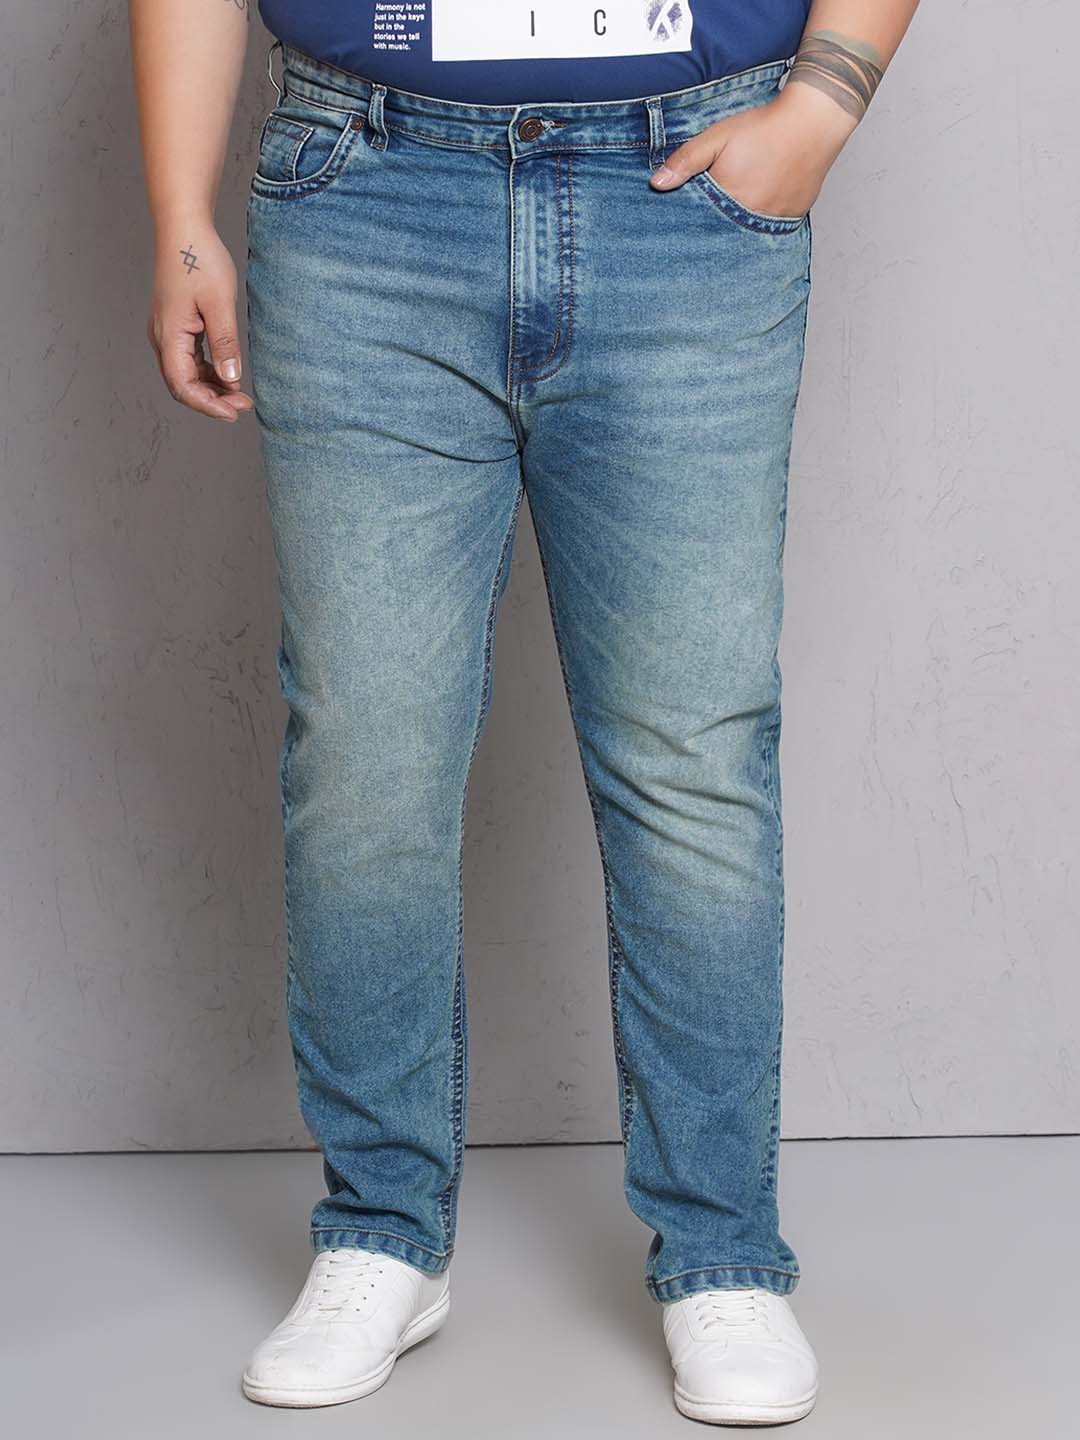 bottomwear/jeans/EJPJ25148/ejpj25148-1.jpg